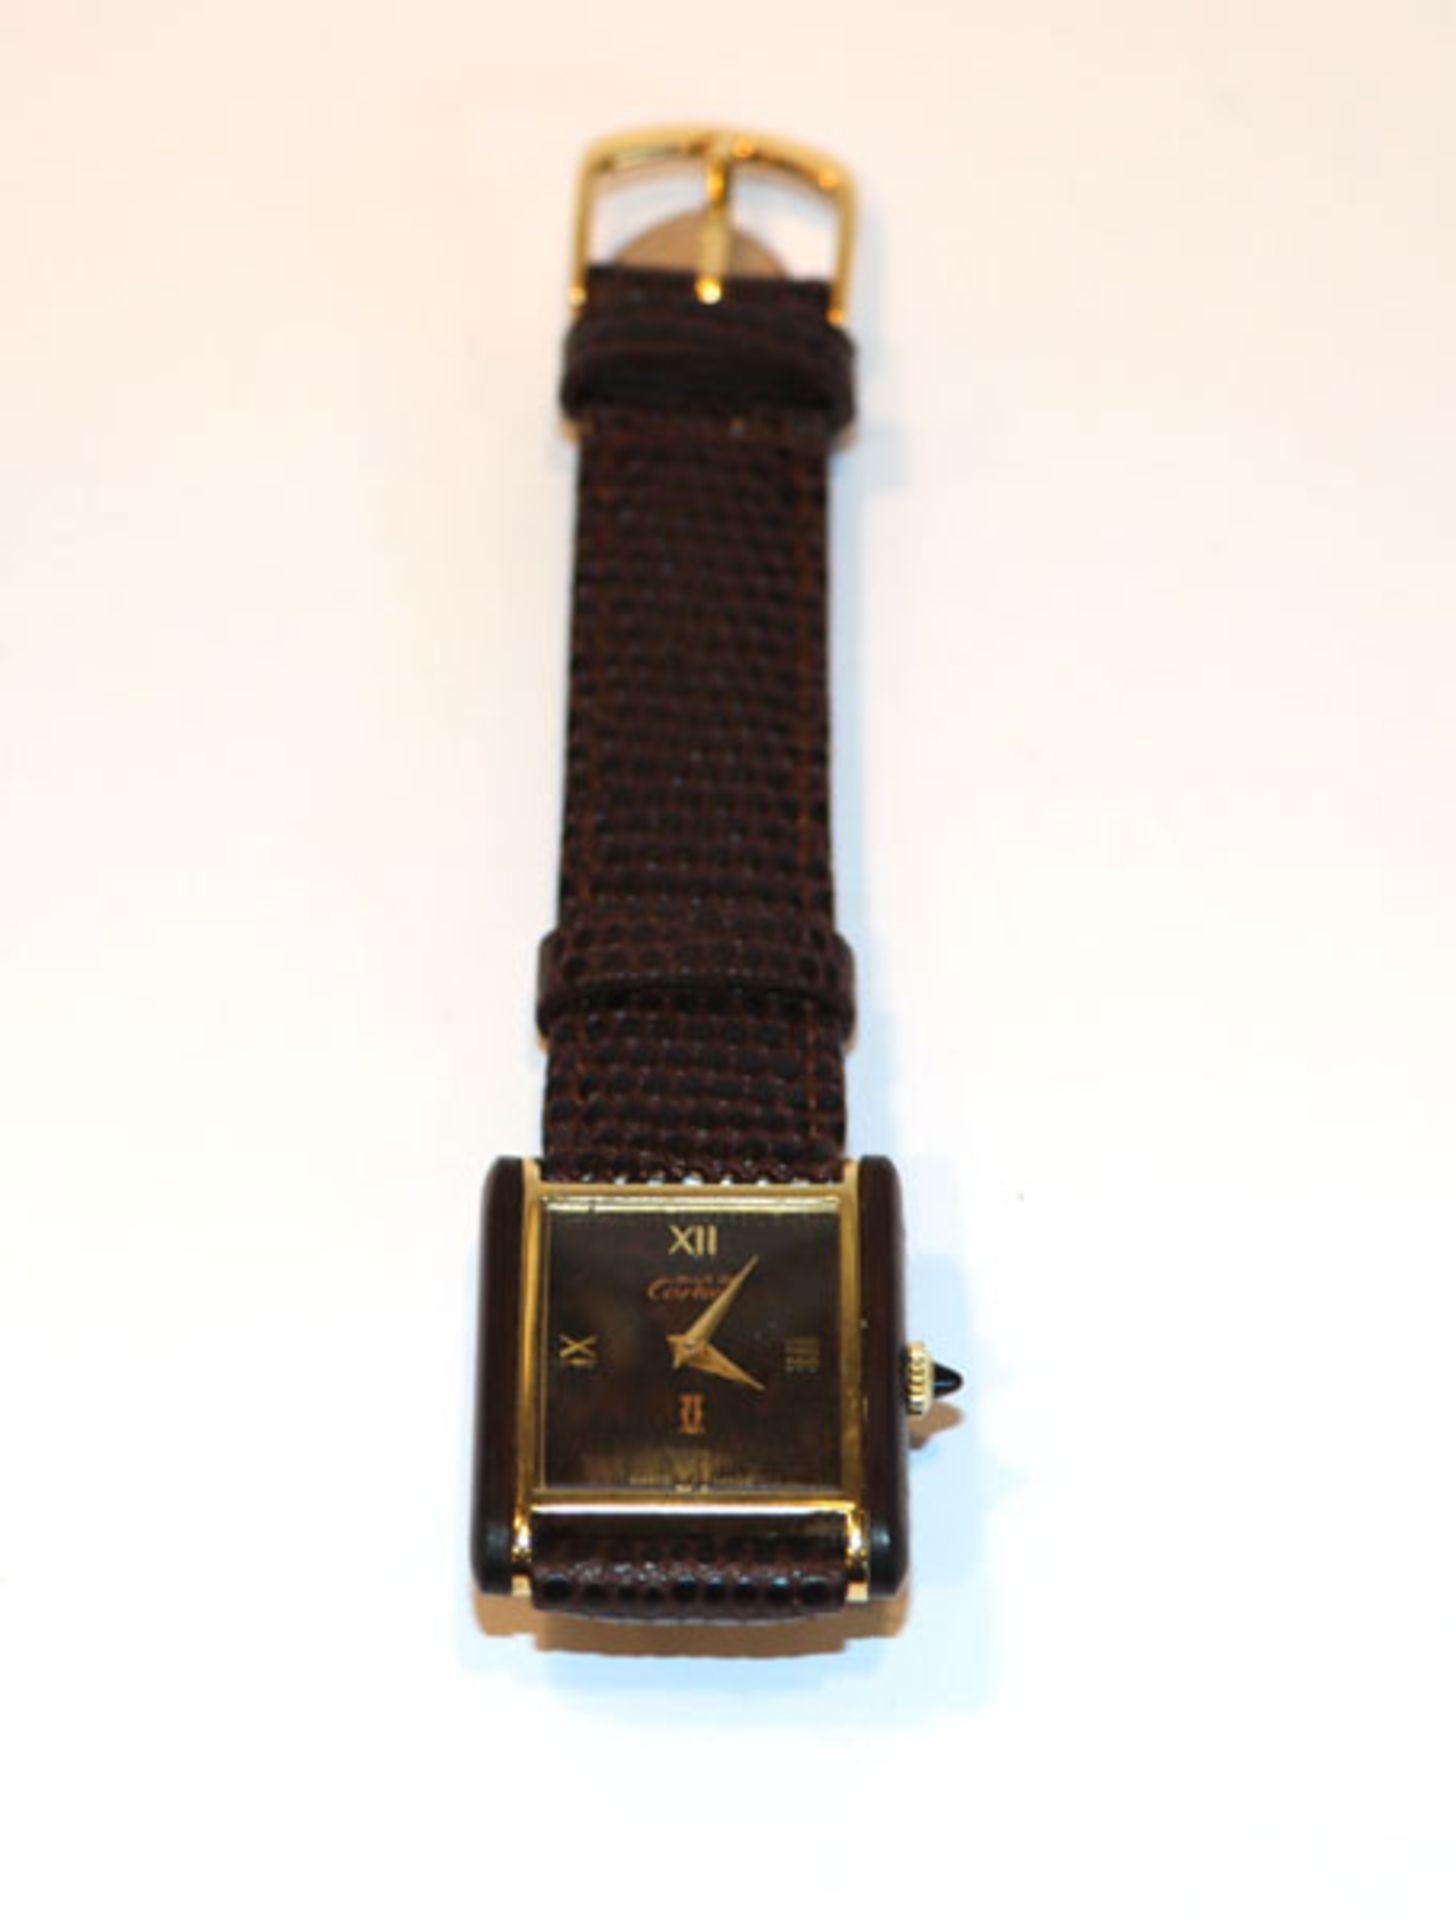 Cartier Damen-Armbanduhr, Gehäuse 18 k vegoldet, braunes Zifferblatt, an neuem Armband, Herzog